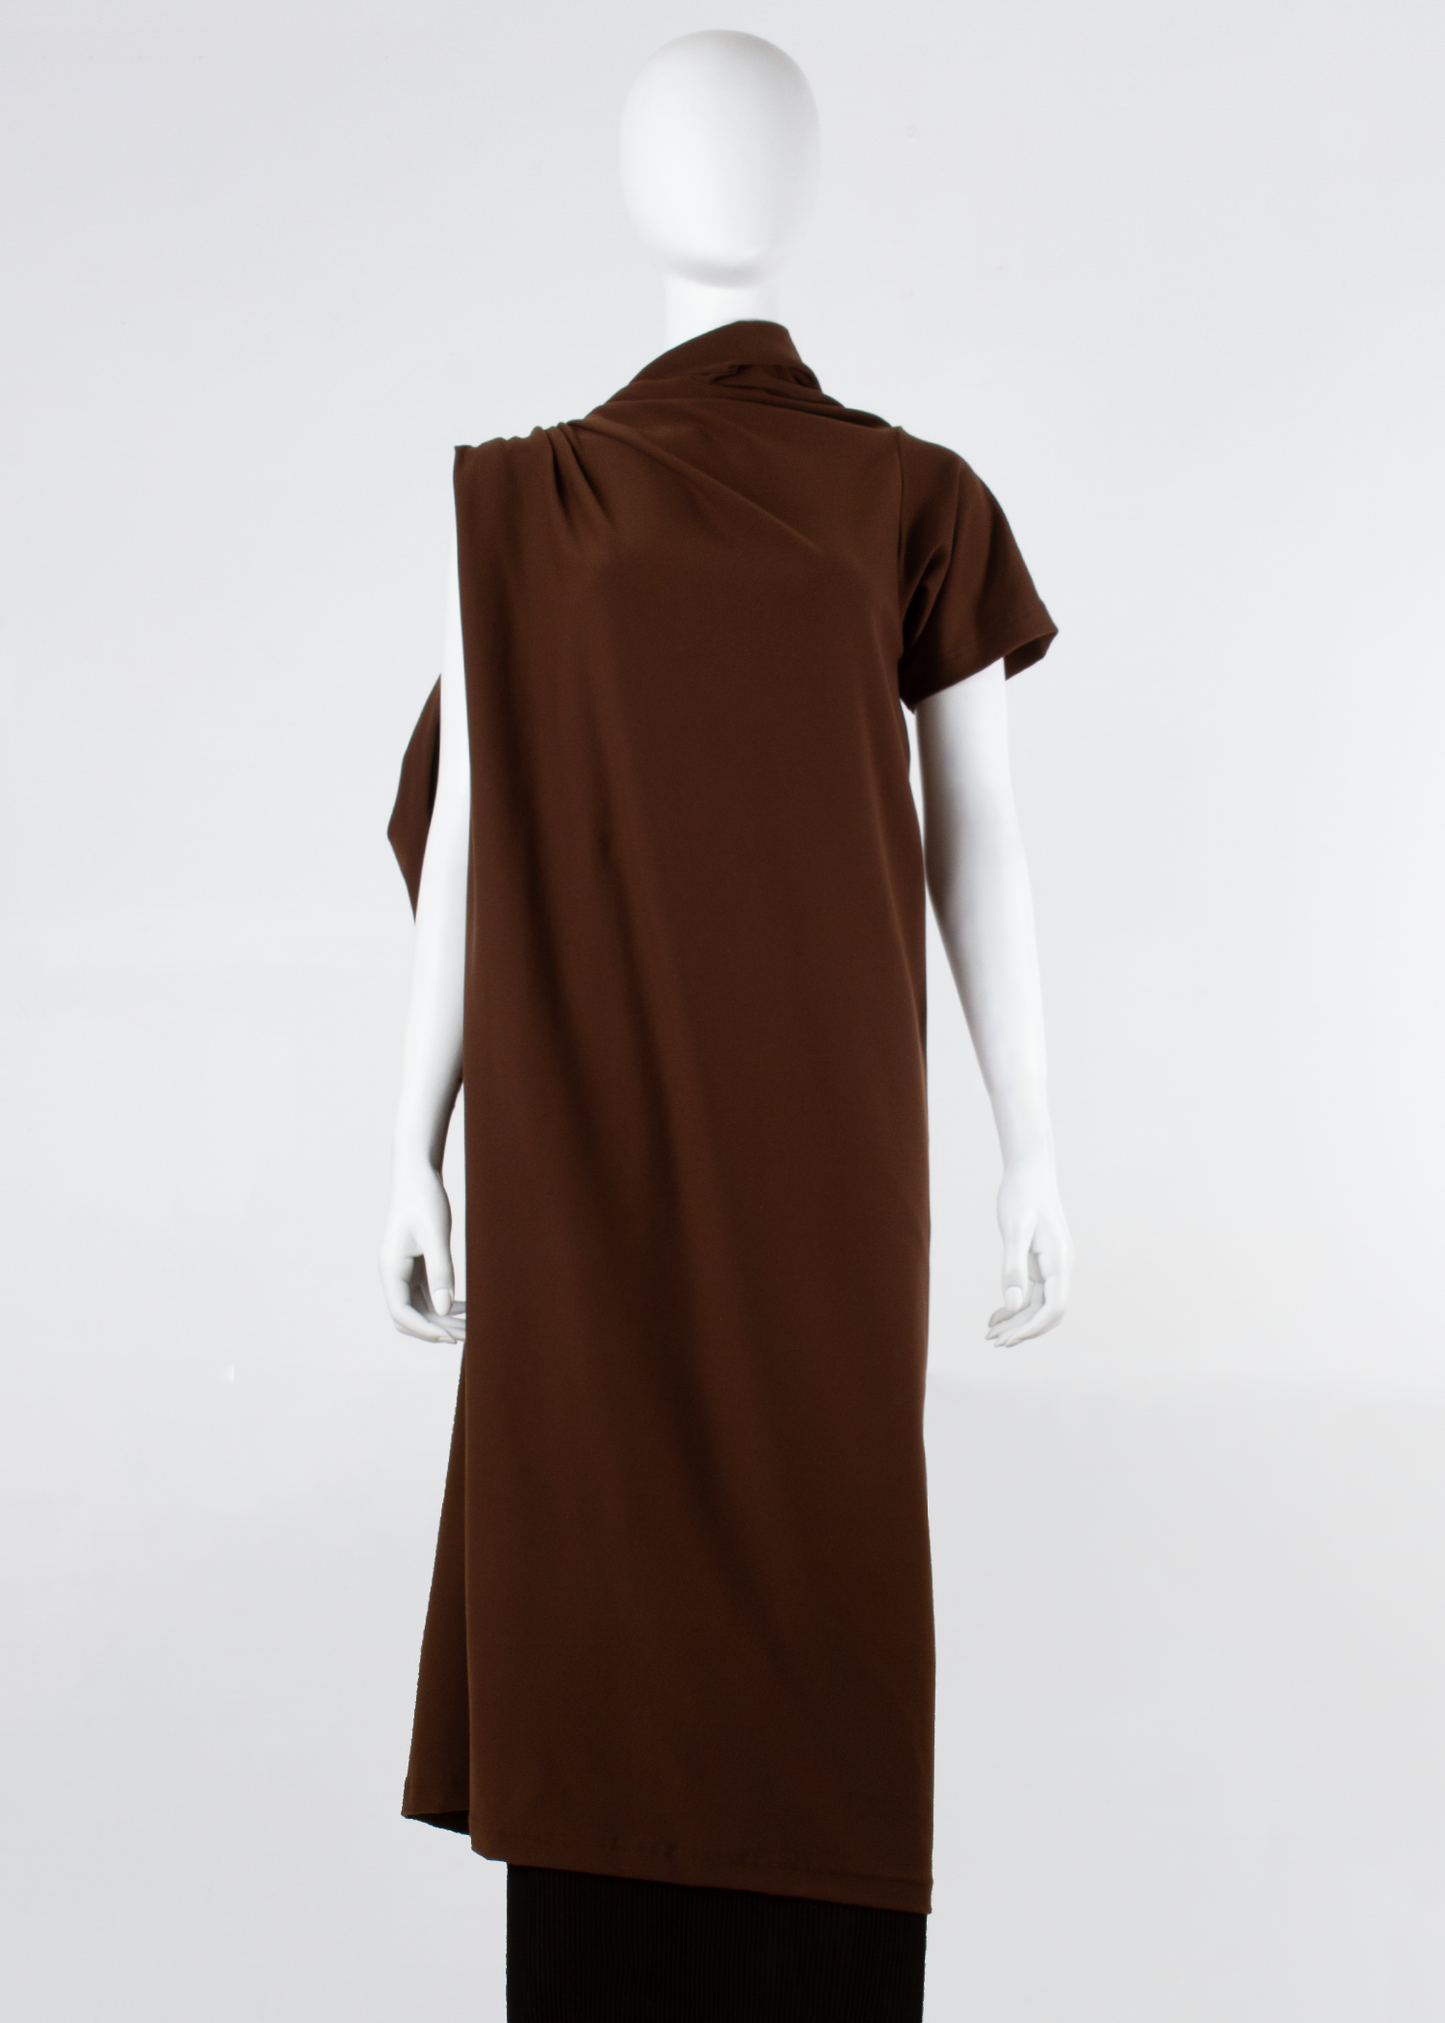 trammel dress - brown